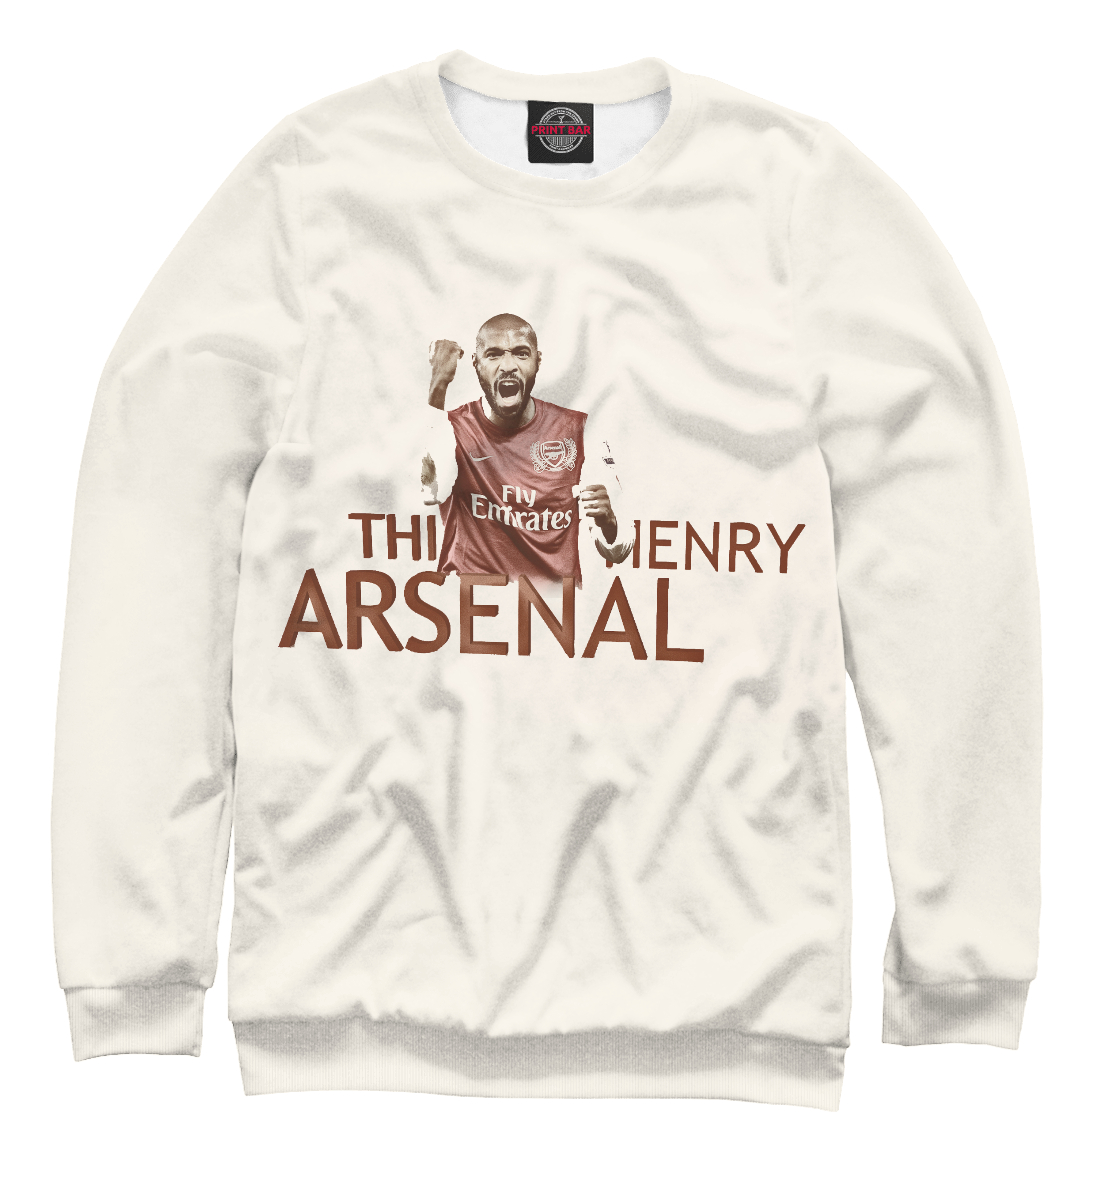 

FC Arsenal - Тьерри Анри